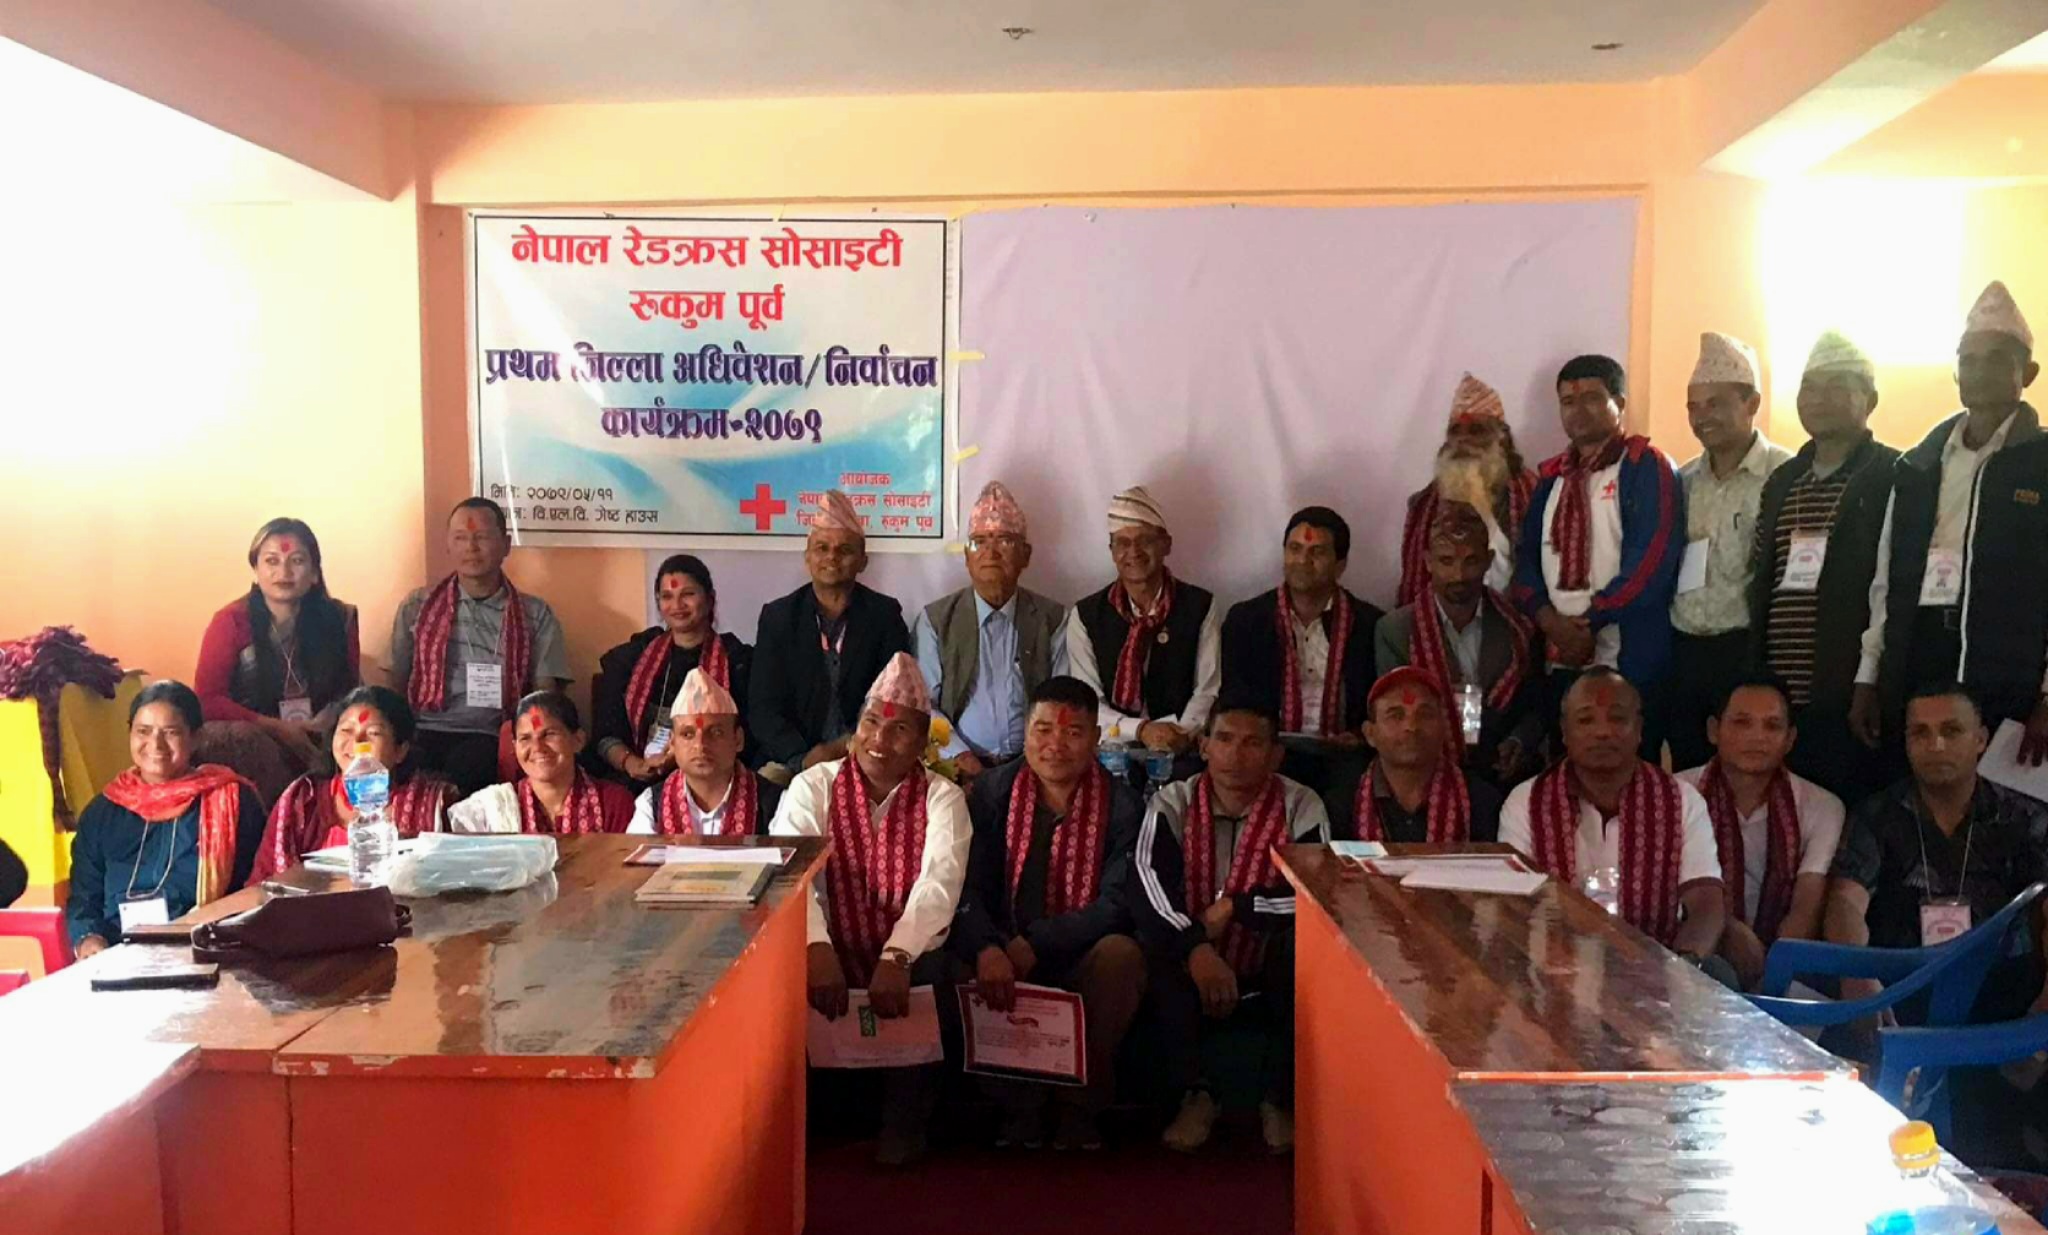 नेपाल रेडक्रस सोसाईटी रुकुम पूर्वको सभापतिमा गौतम, मन्त्रीमा बुढाथोकी चयन